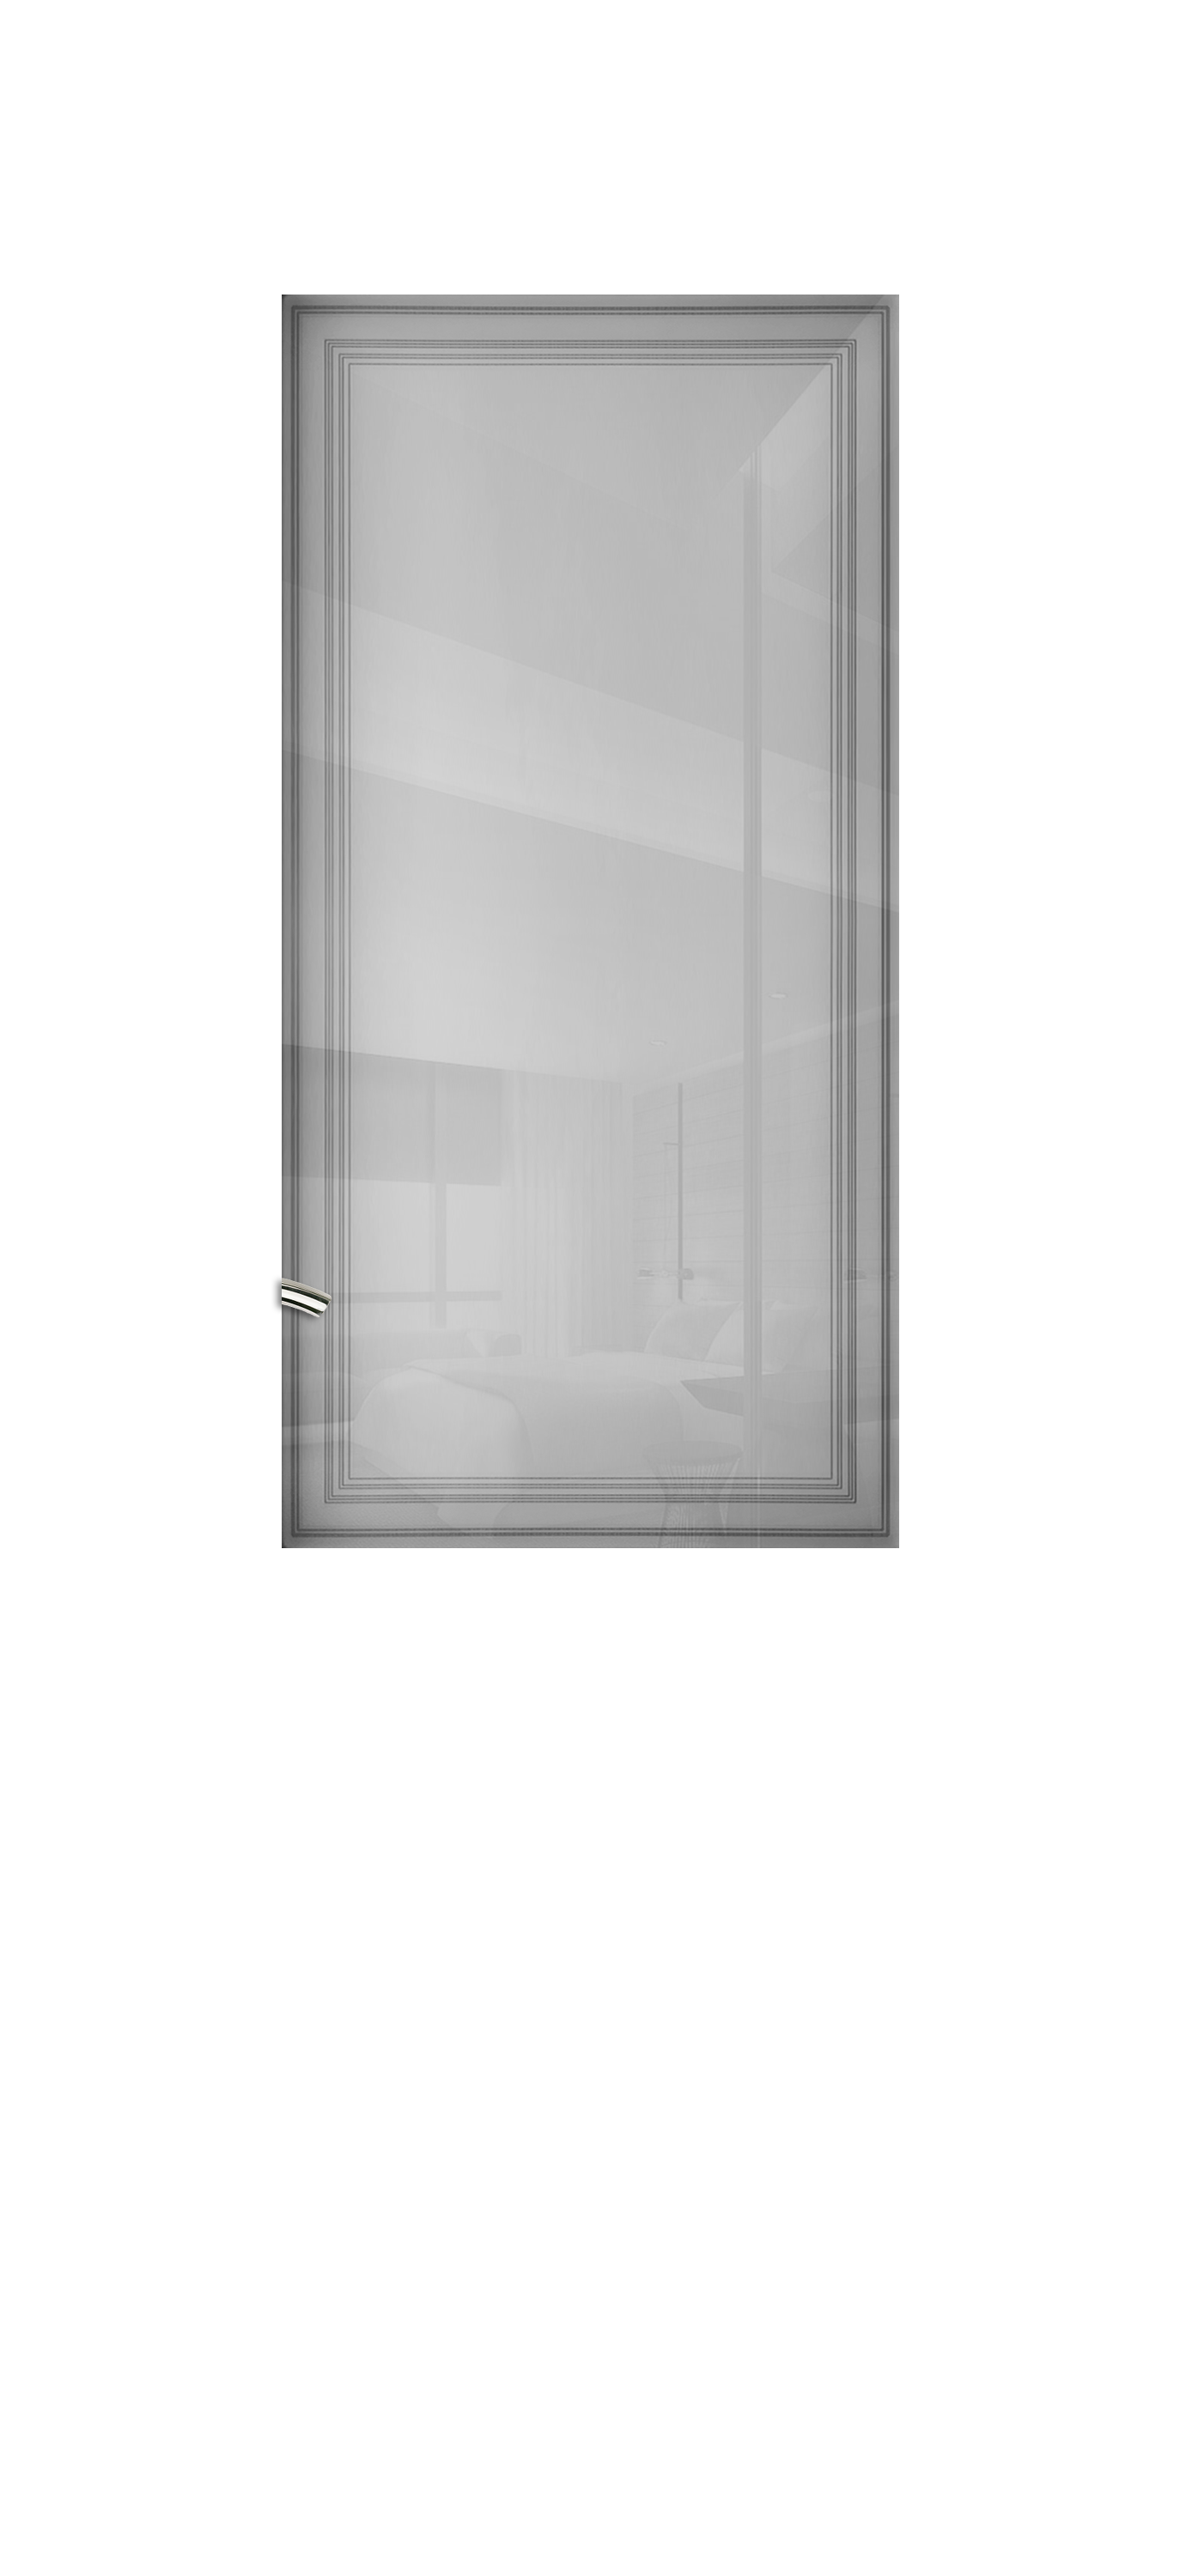 Межкомнатная дверь «Vision-2». Вид отделки Белая эмаль Остекление: Узор 1 Cтандартный наличник